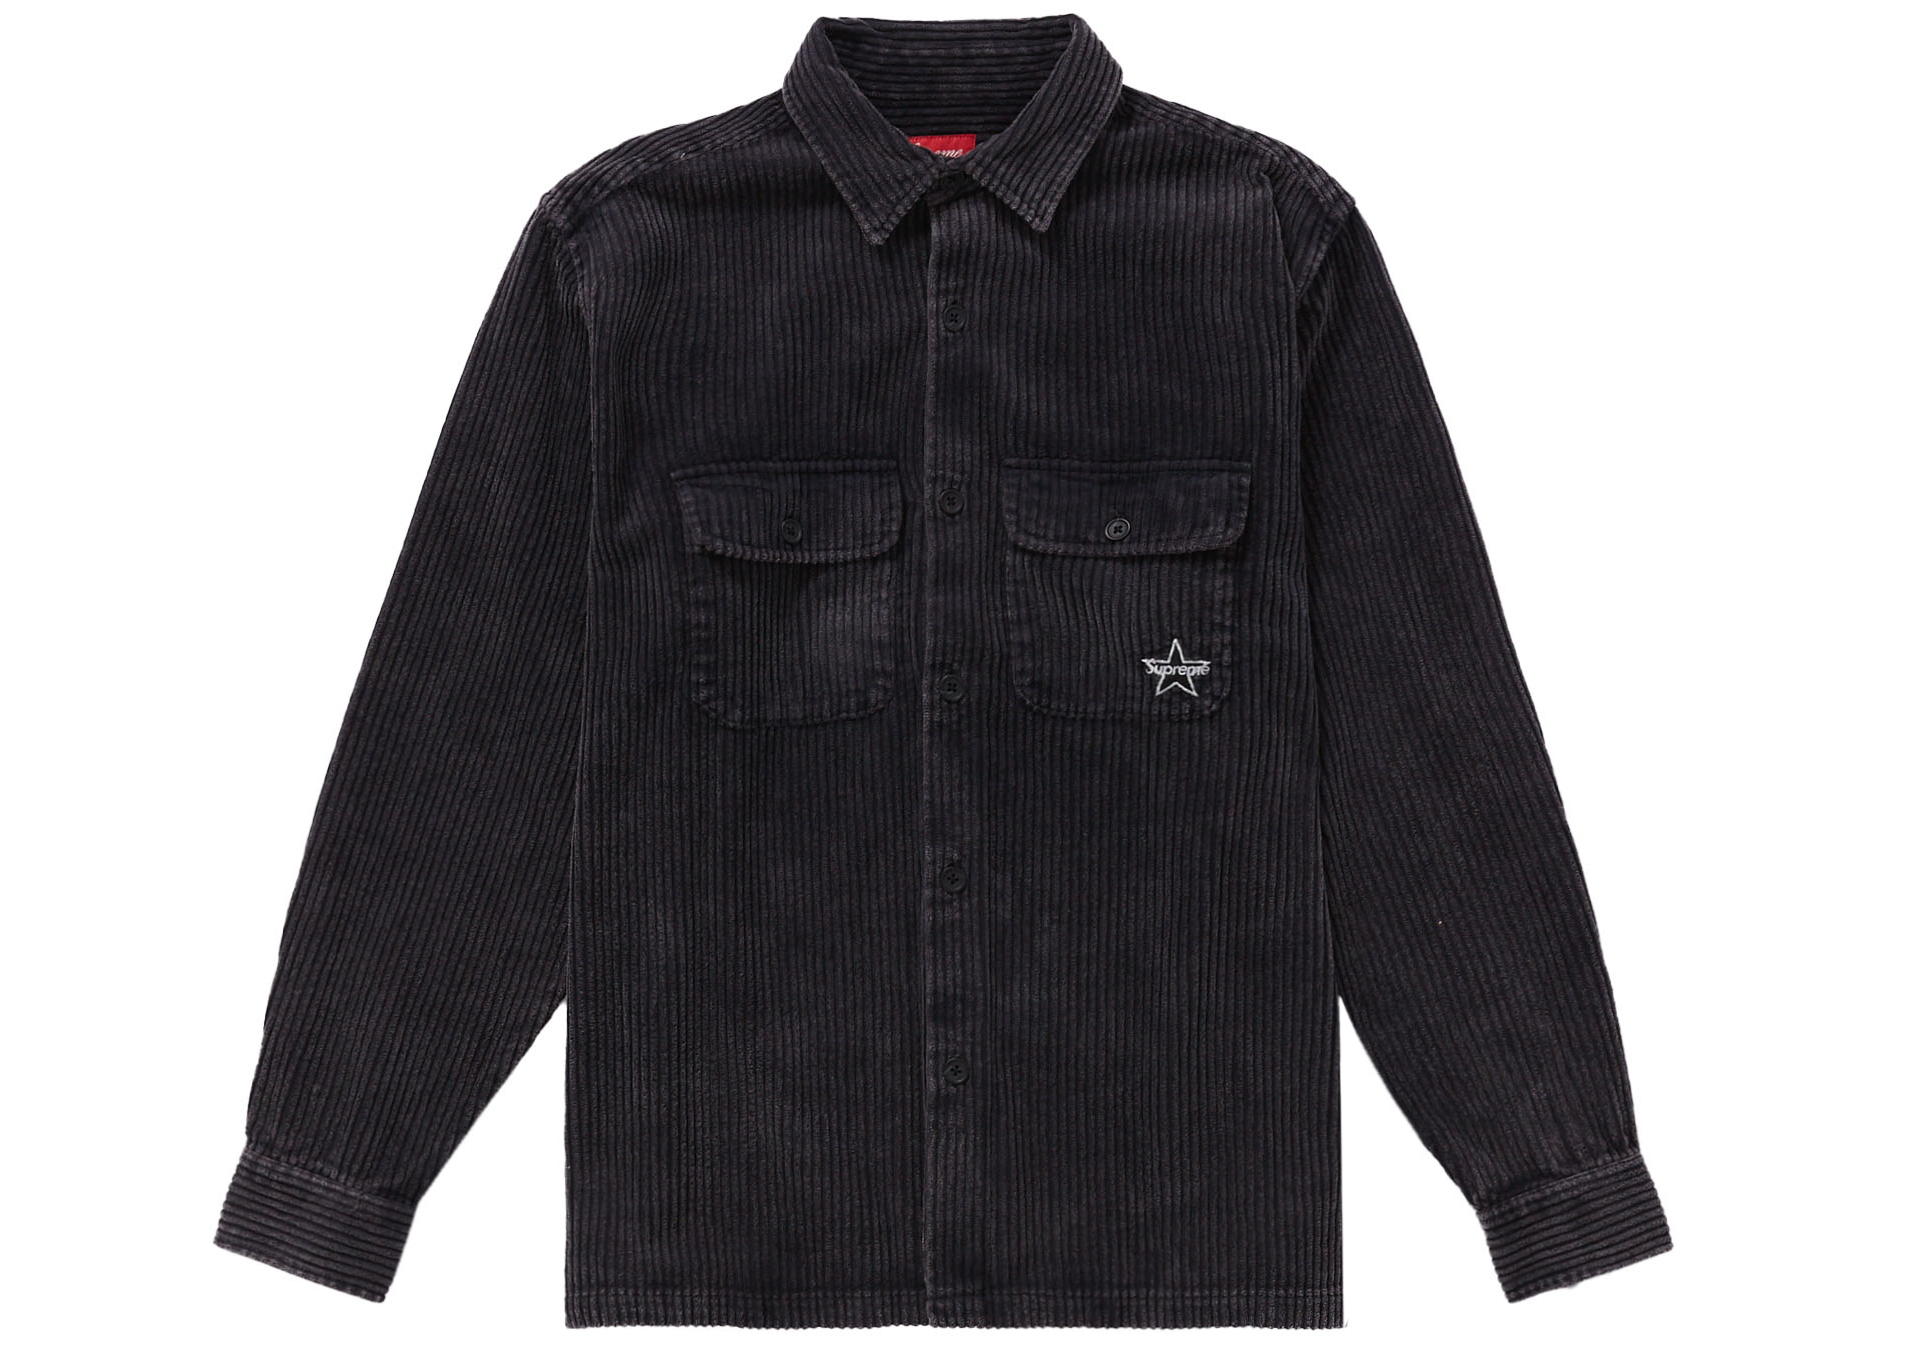 6,900円Supreme Corduroy Shirt Black